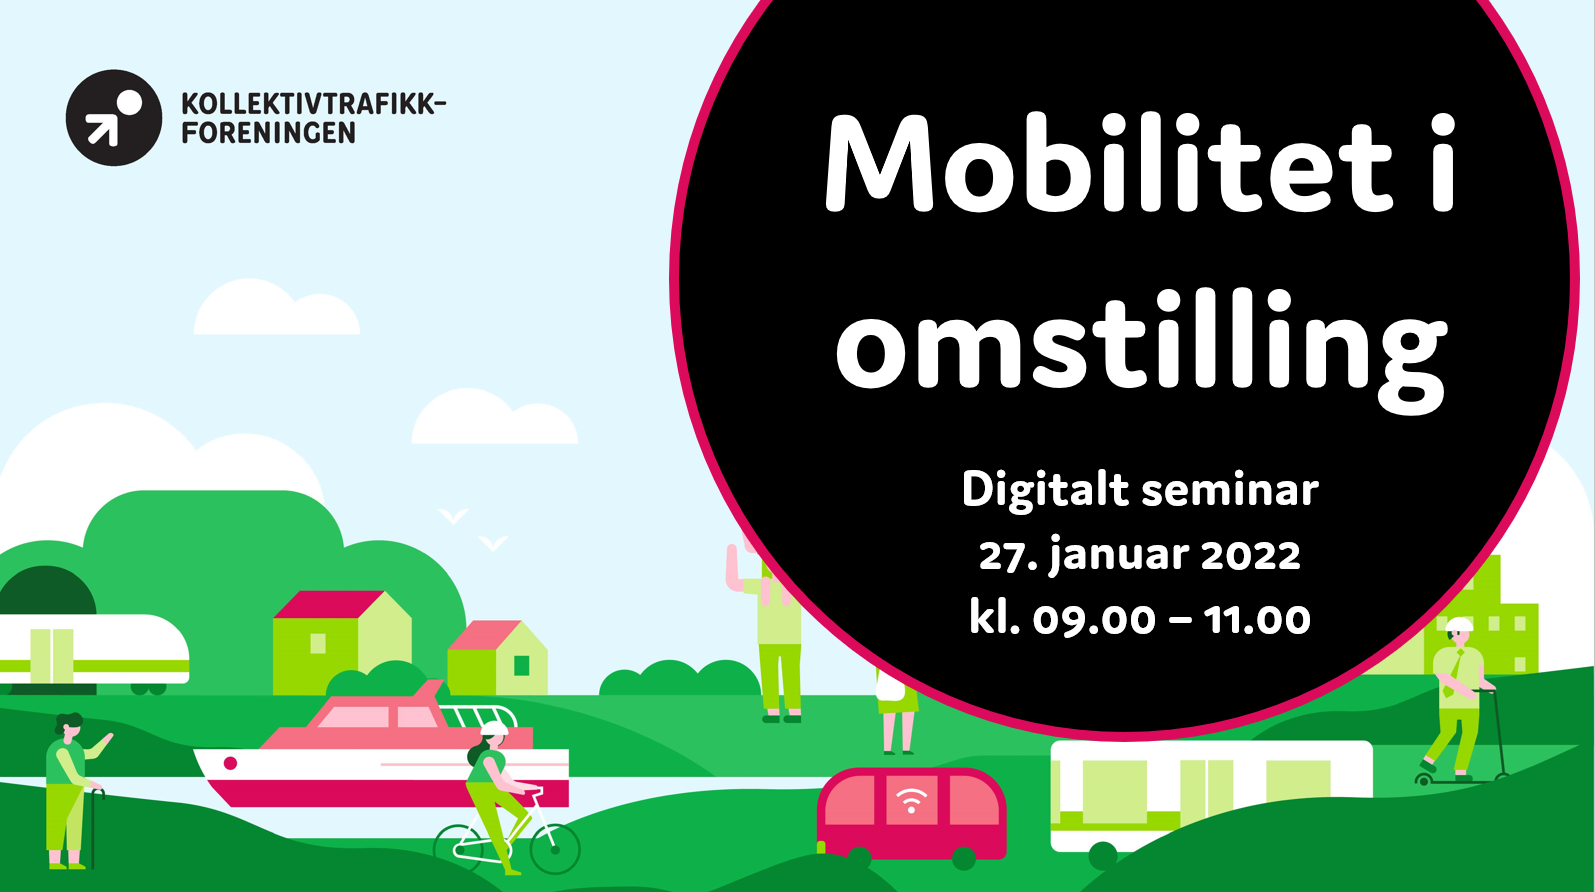 Stor interesse for digitalt seminar 27. januar: Mobilitet i omstilling